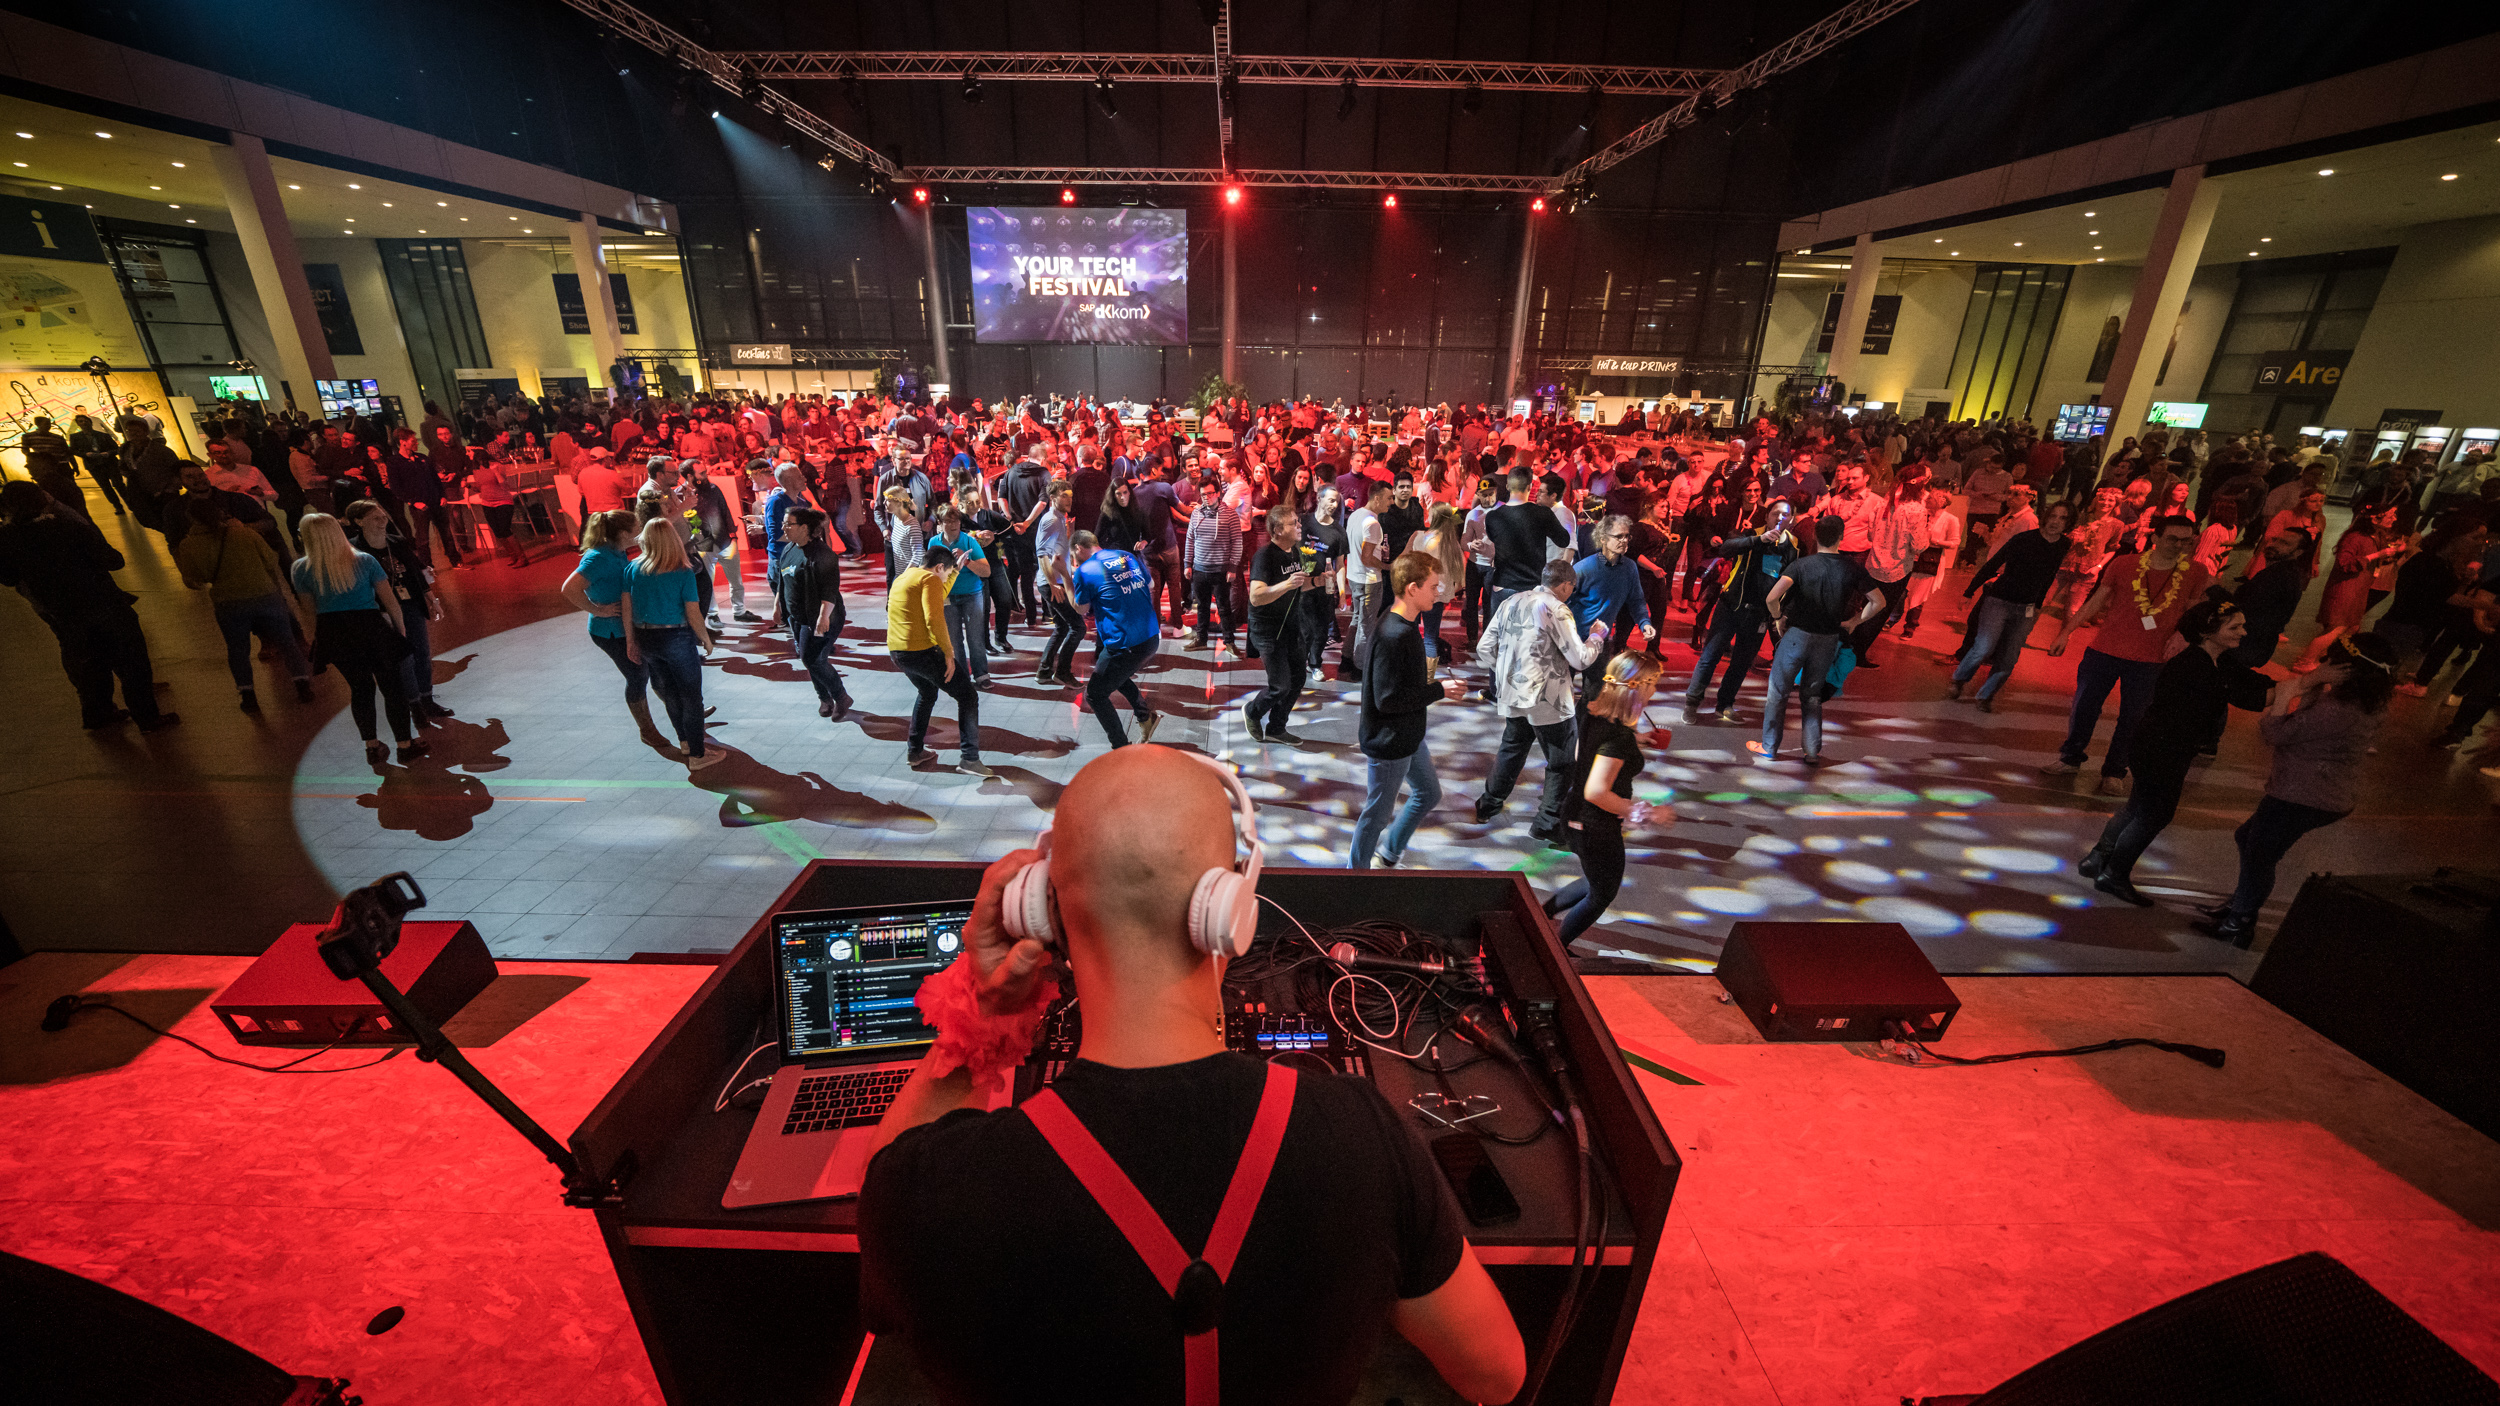 Im Vordergrund befindet sich ein DJ mit DJ-Pult, der auf die Tanzfläche mit den sich amüsierenden Besucher*innen blickt.